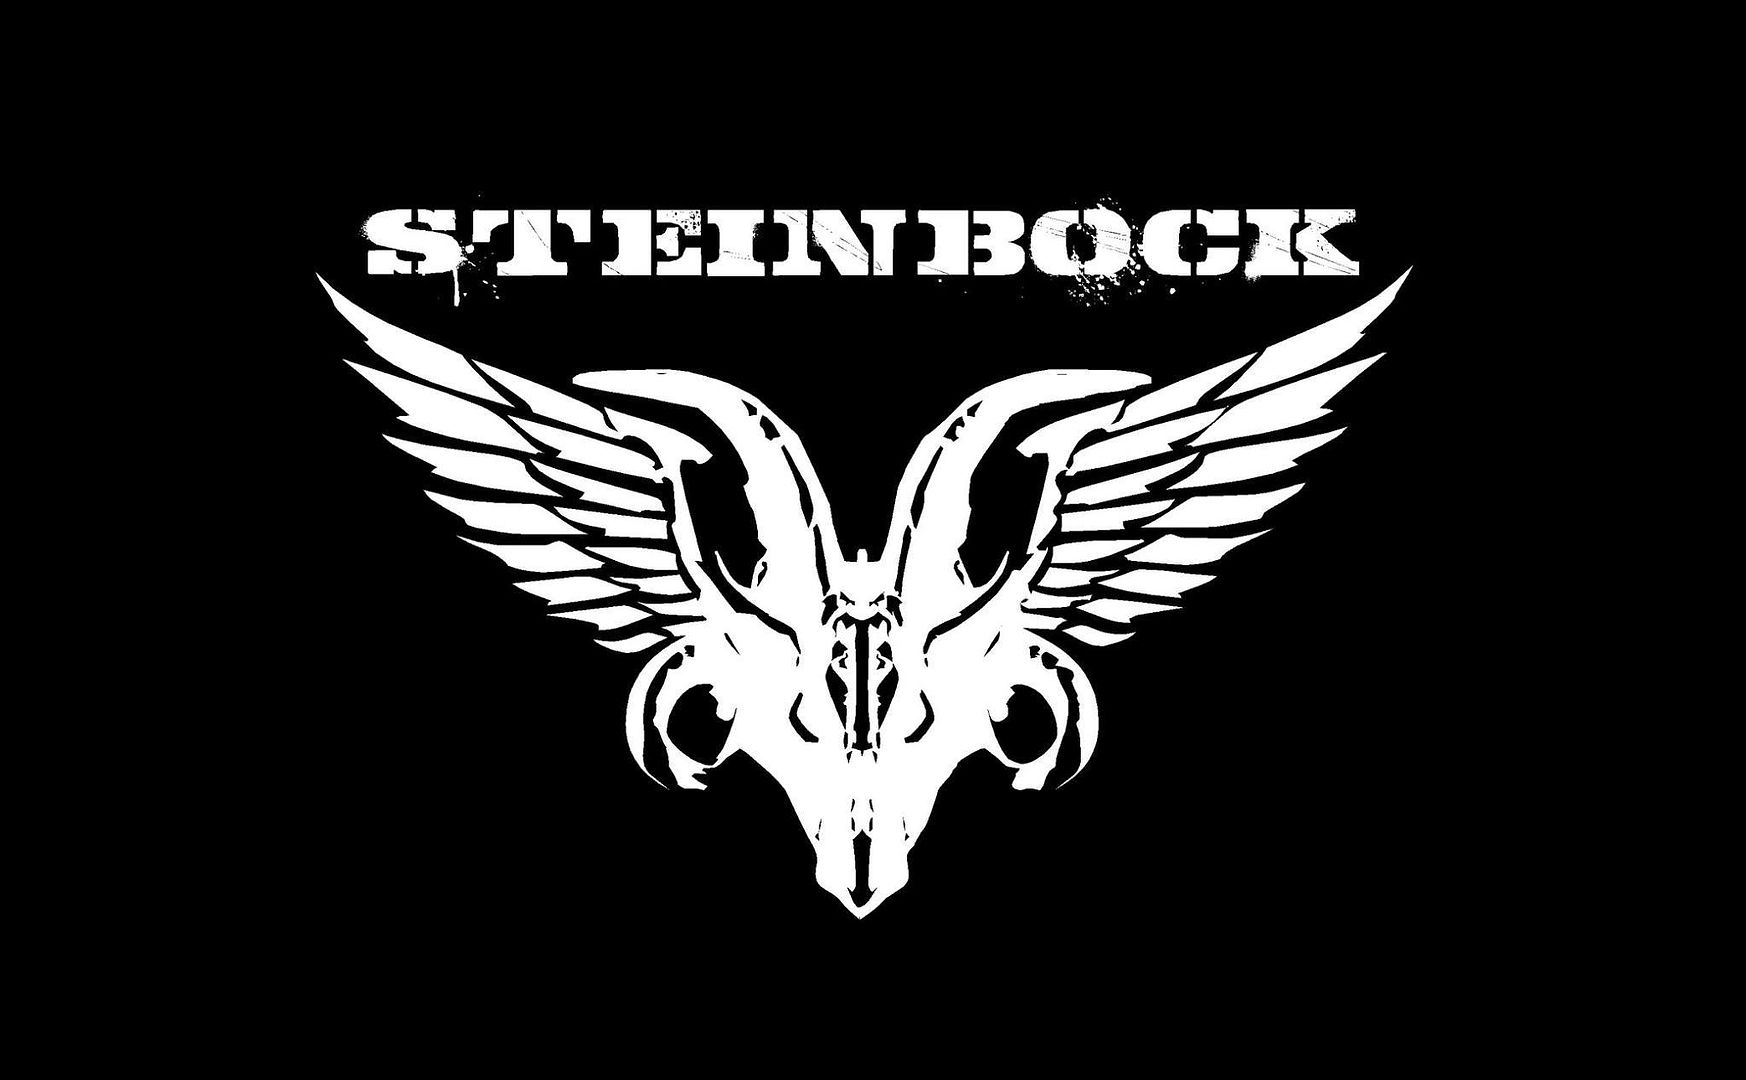 Steinbock - Steinbock